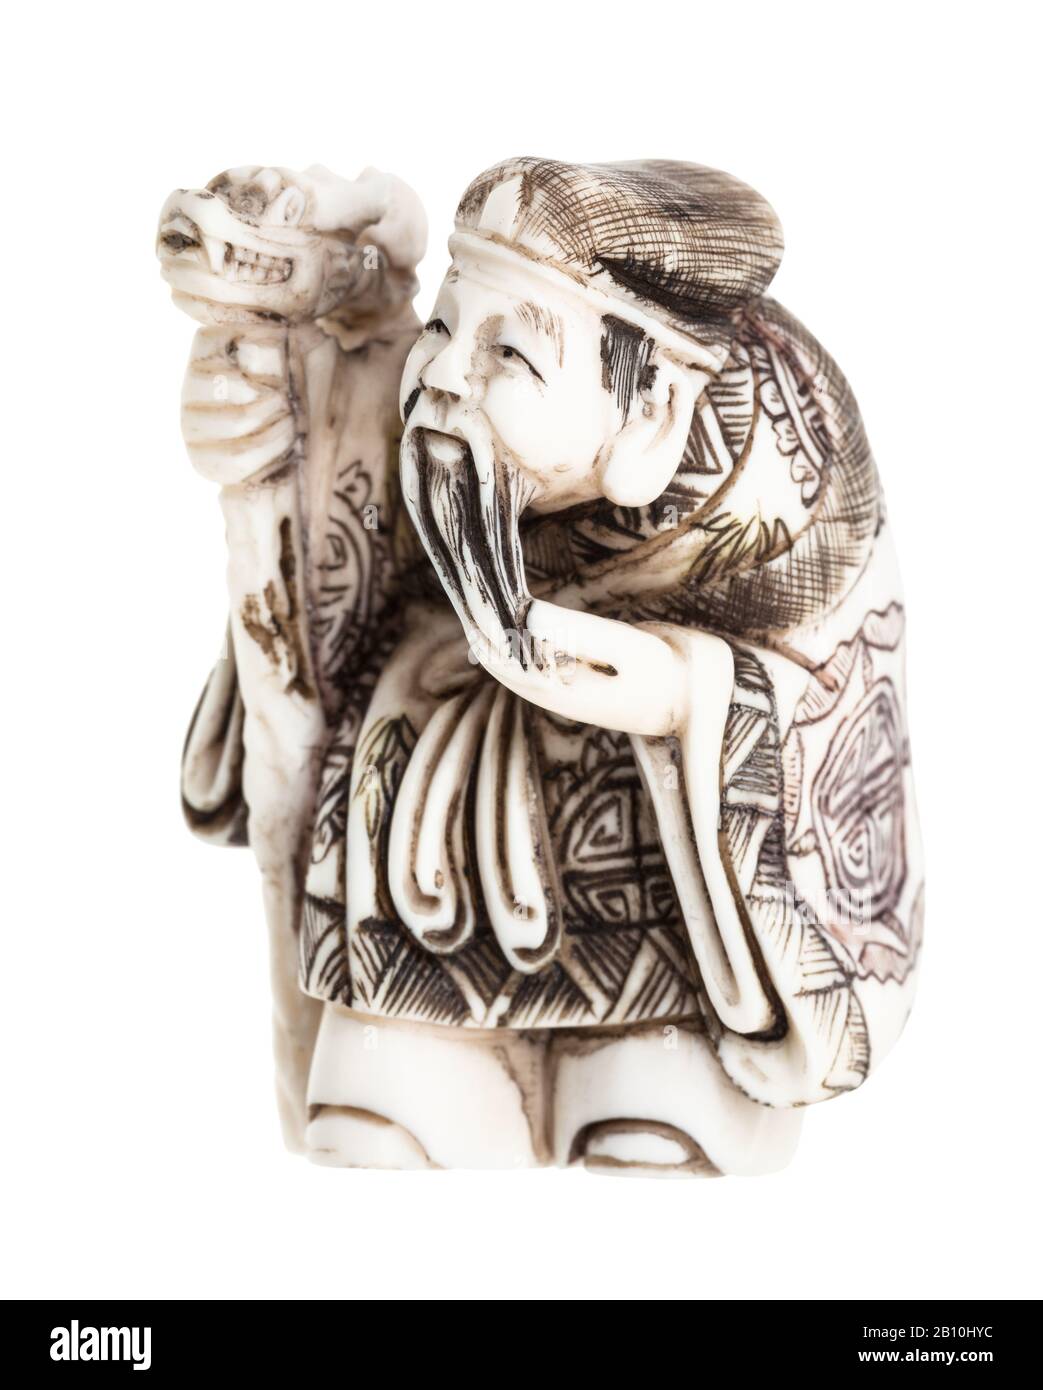 ancien netsuke japonais - vieil homme avec du personnel sculpté à partir d'ivoire isolé sur fond blanc Banque D'Images